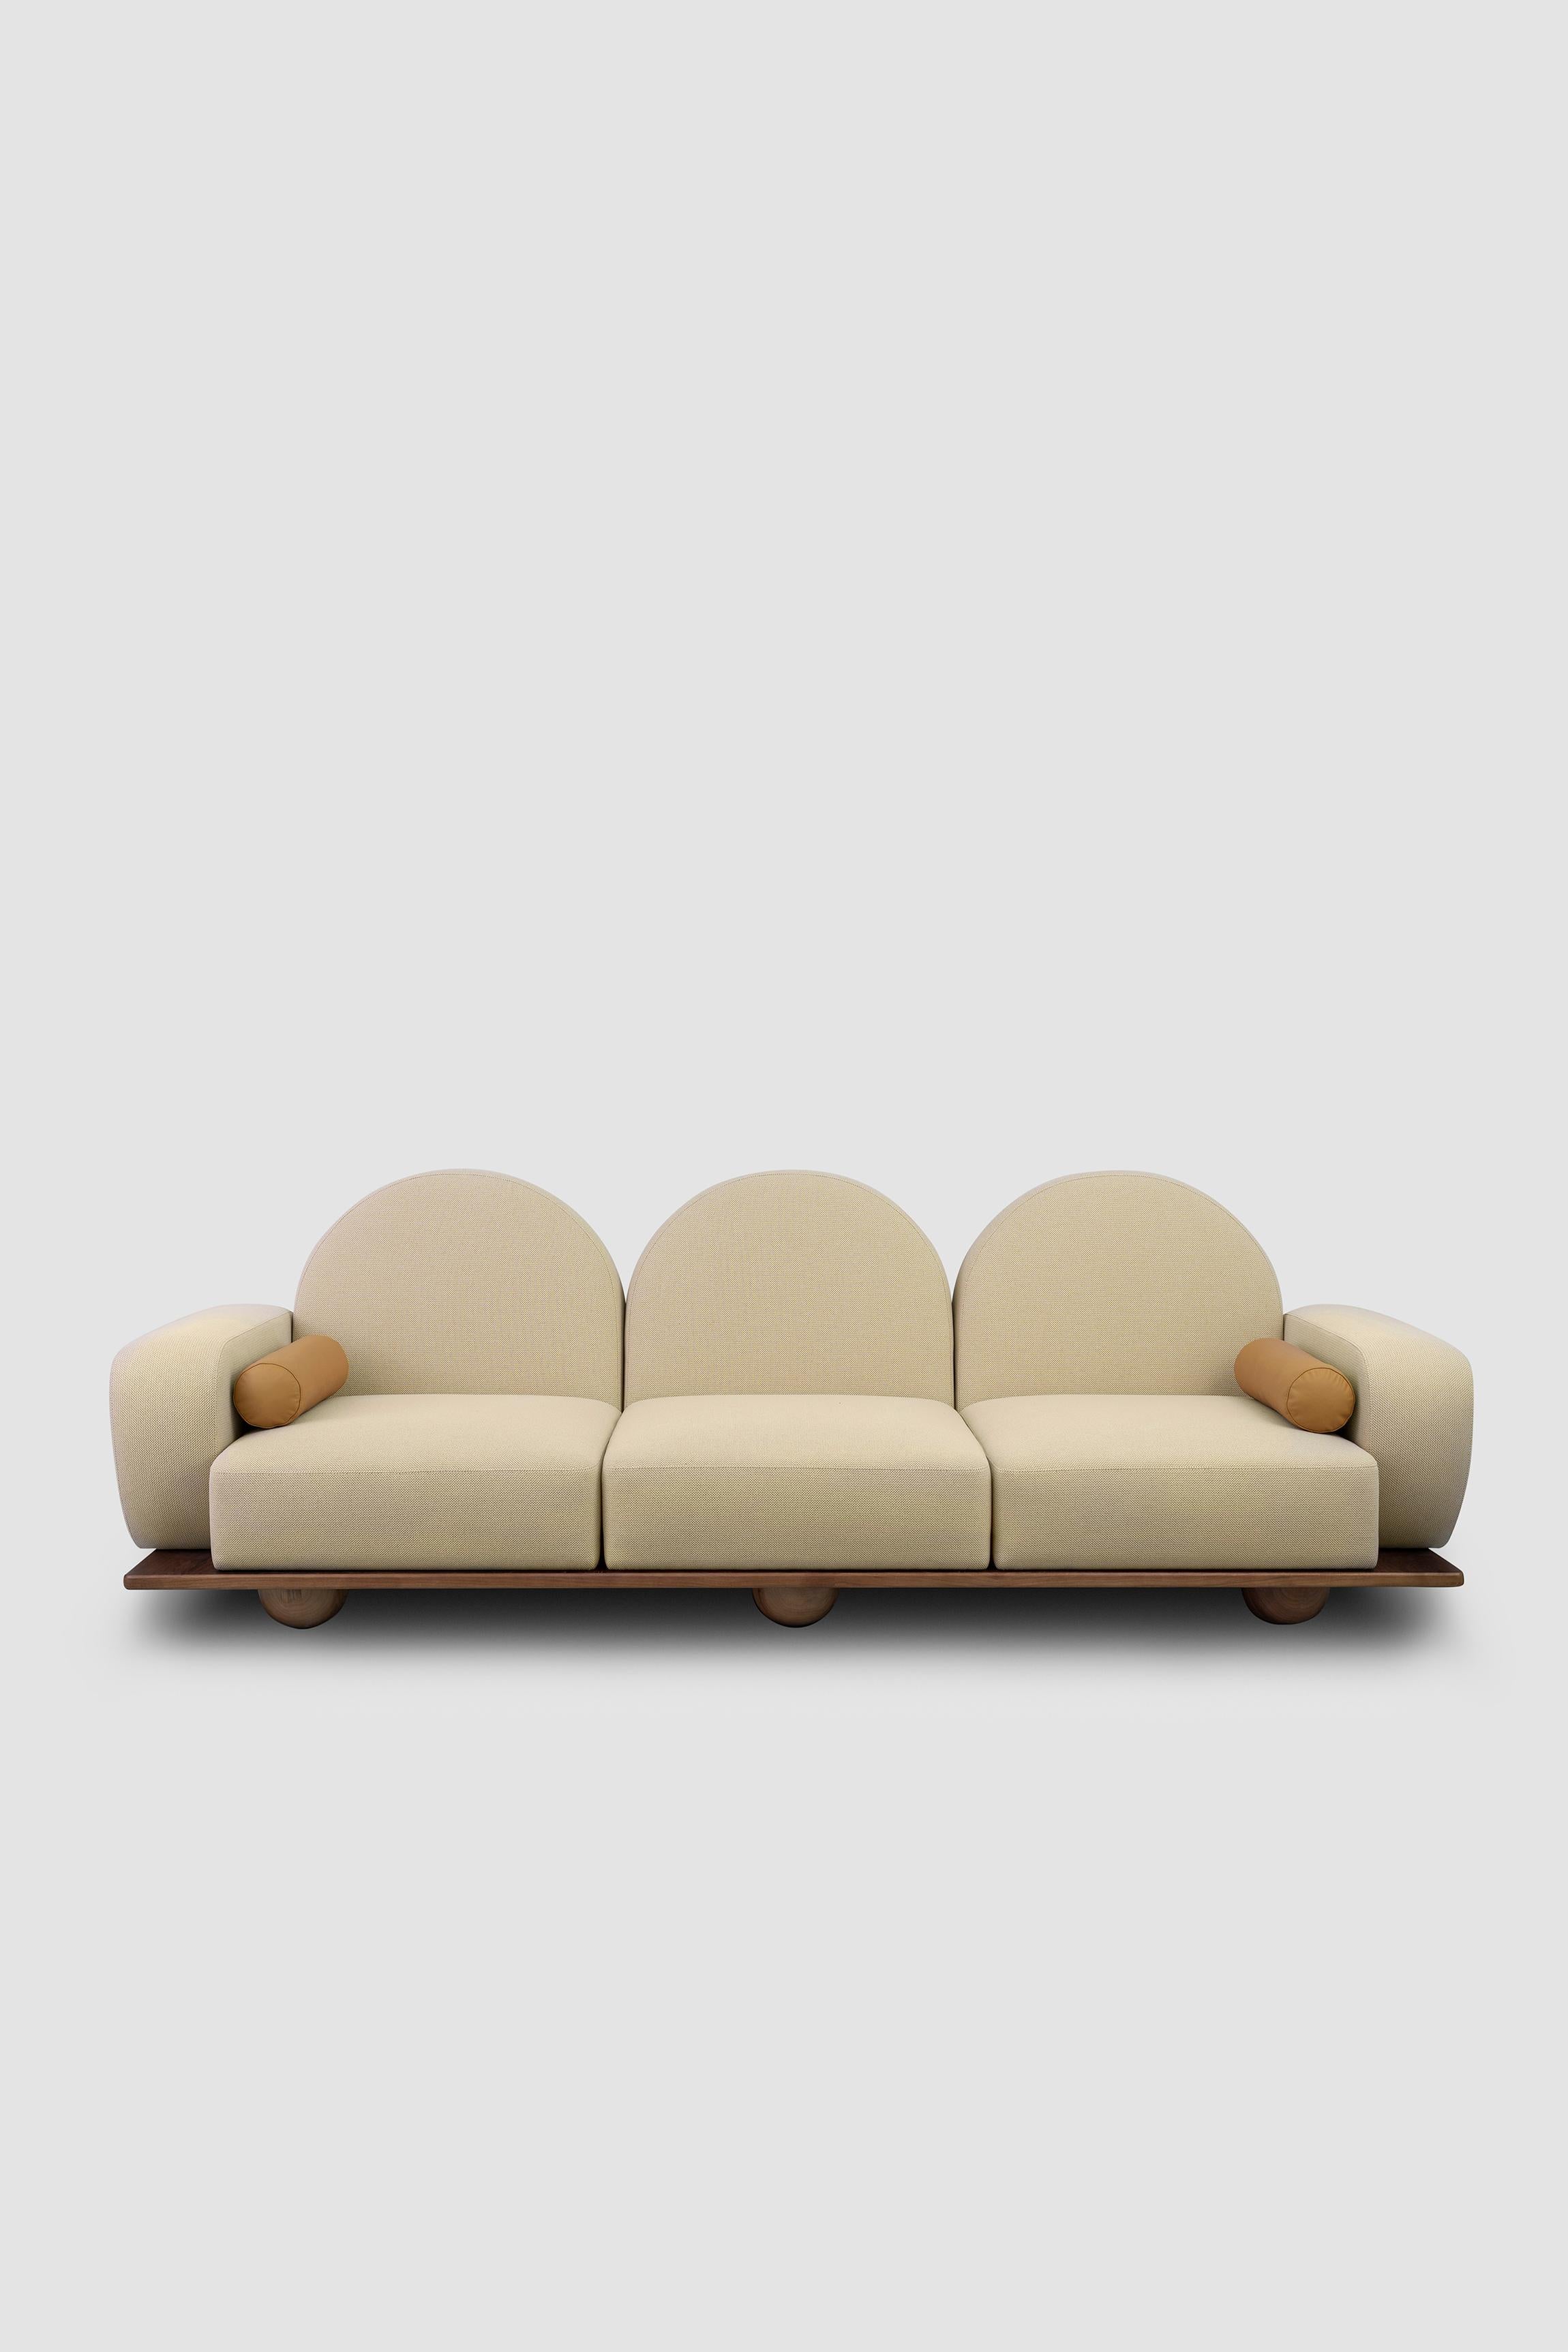 Beice ist ein 3-sitziges Sofa, das das Gefühl vermitteln soll, auf Zuckerwattewolken zu sitzen. Die Kombination aus der Farbe Puderrosa, den bogenförmigen Rückenlehnen, den runden Kanten und den Kugelfüßen aus Nussbaumholz schafft ein verträumtes,